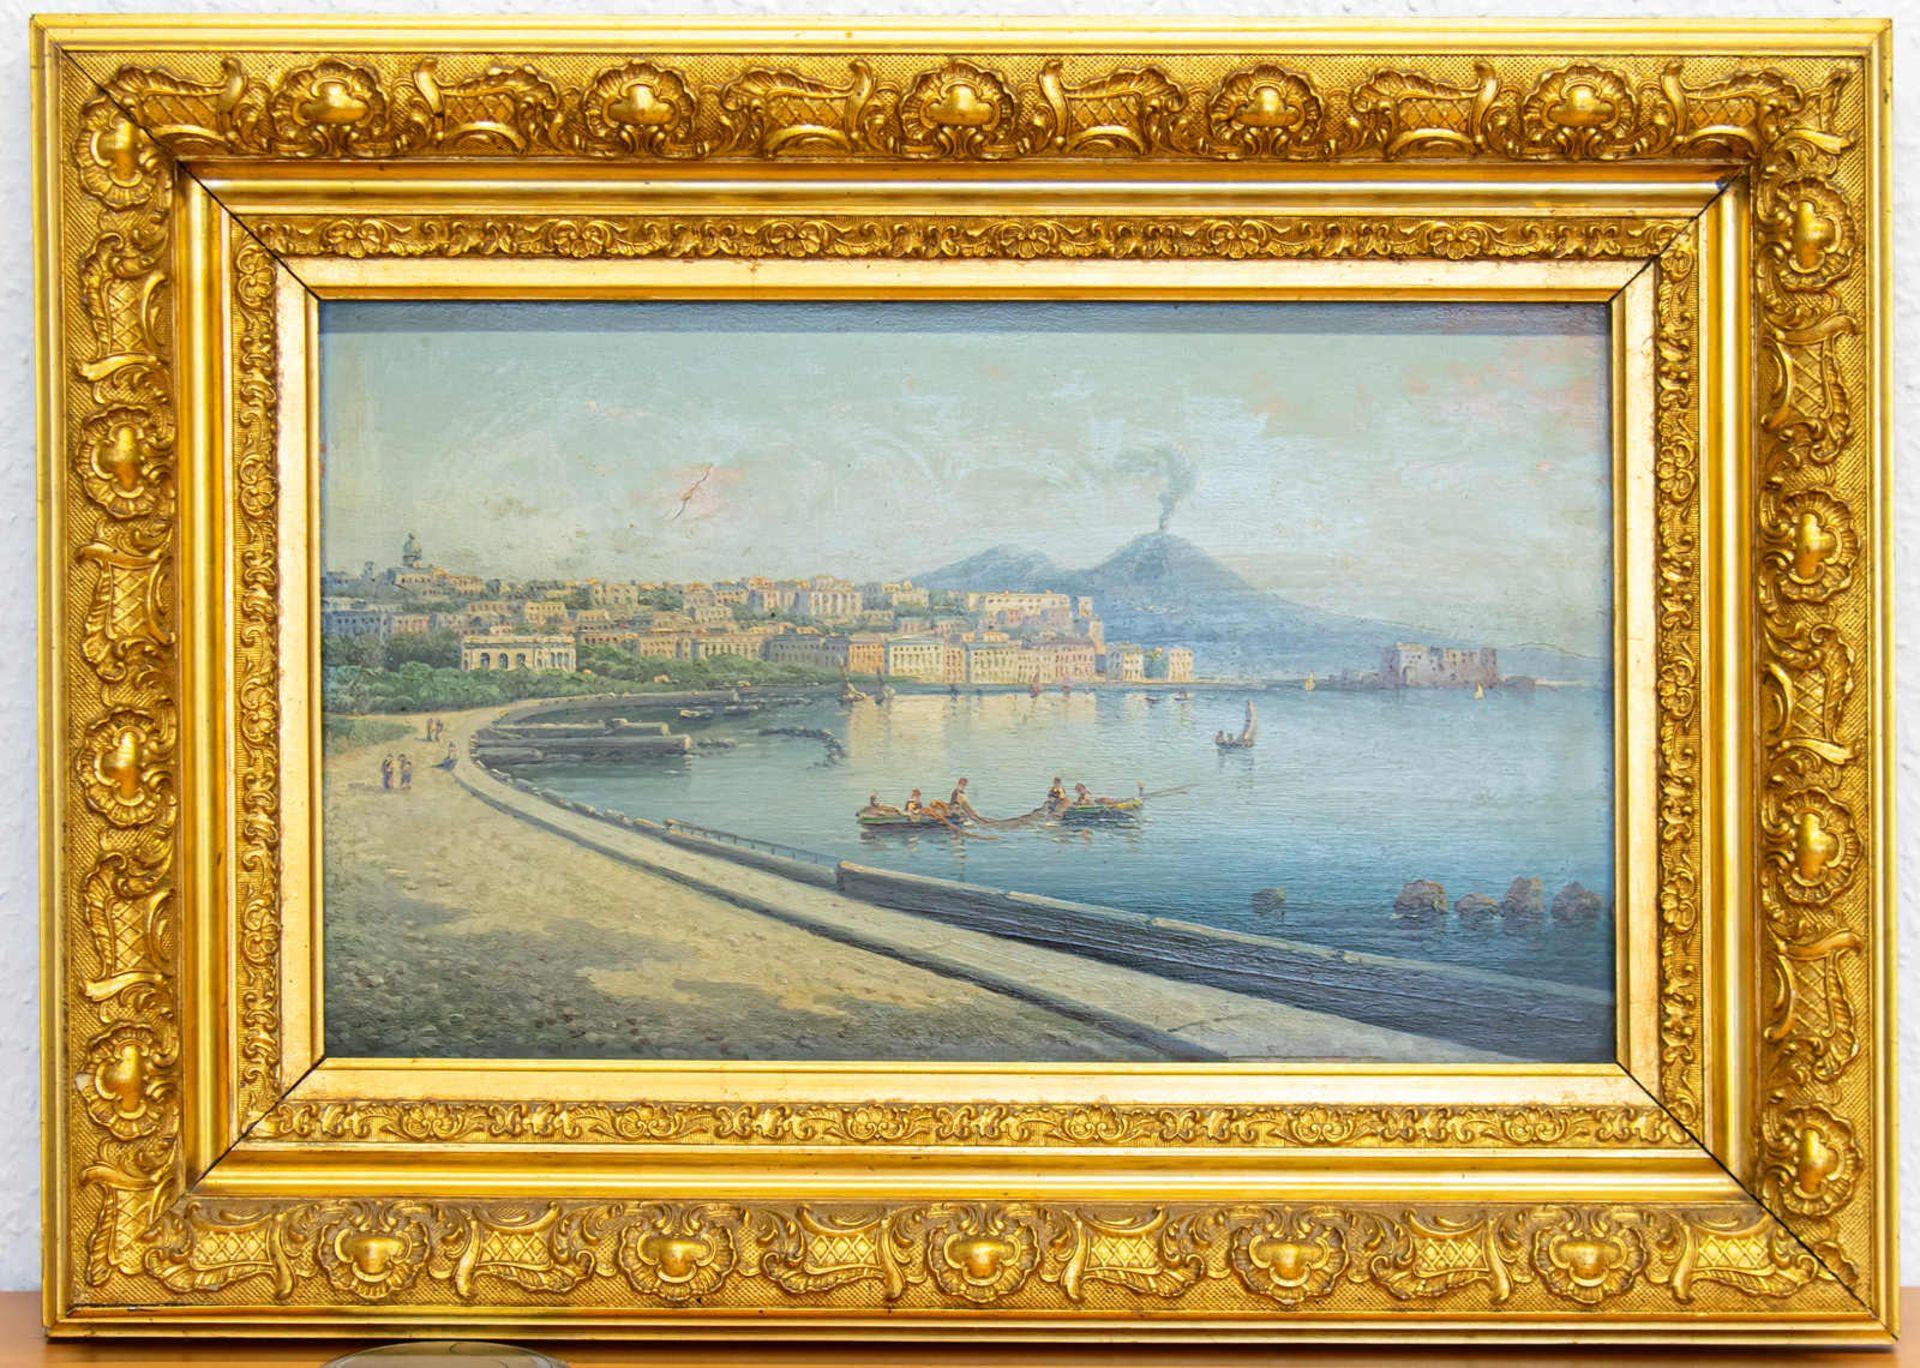 Gemälde Golf von Neapel mit Vesuv